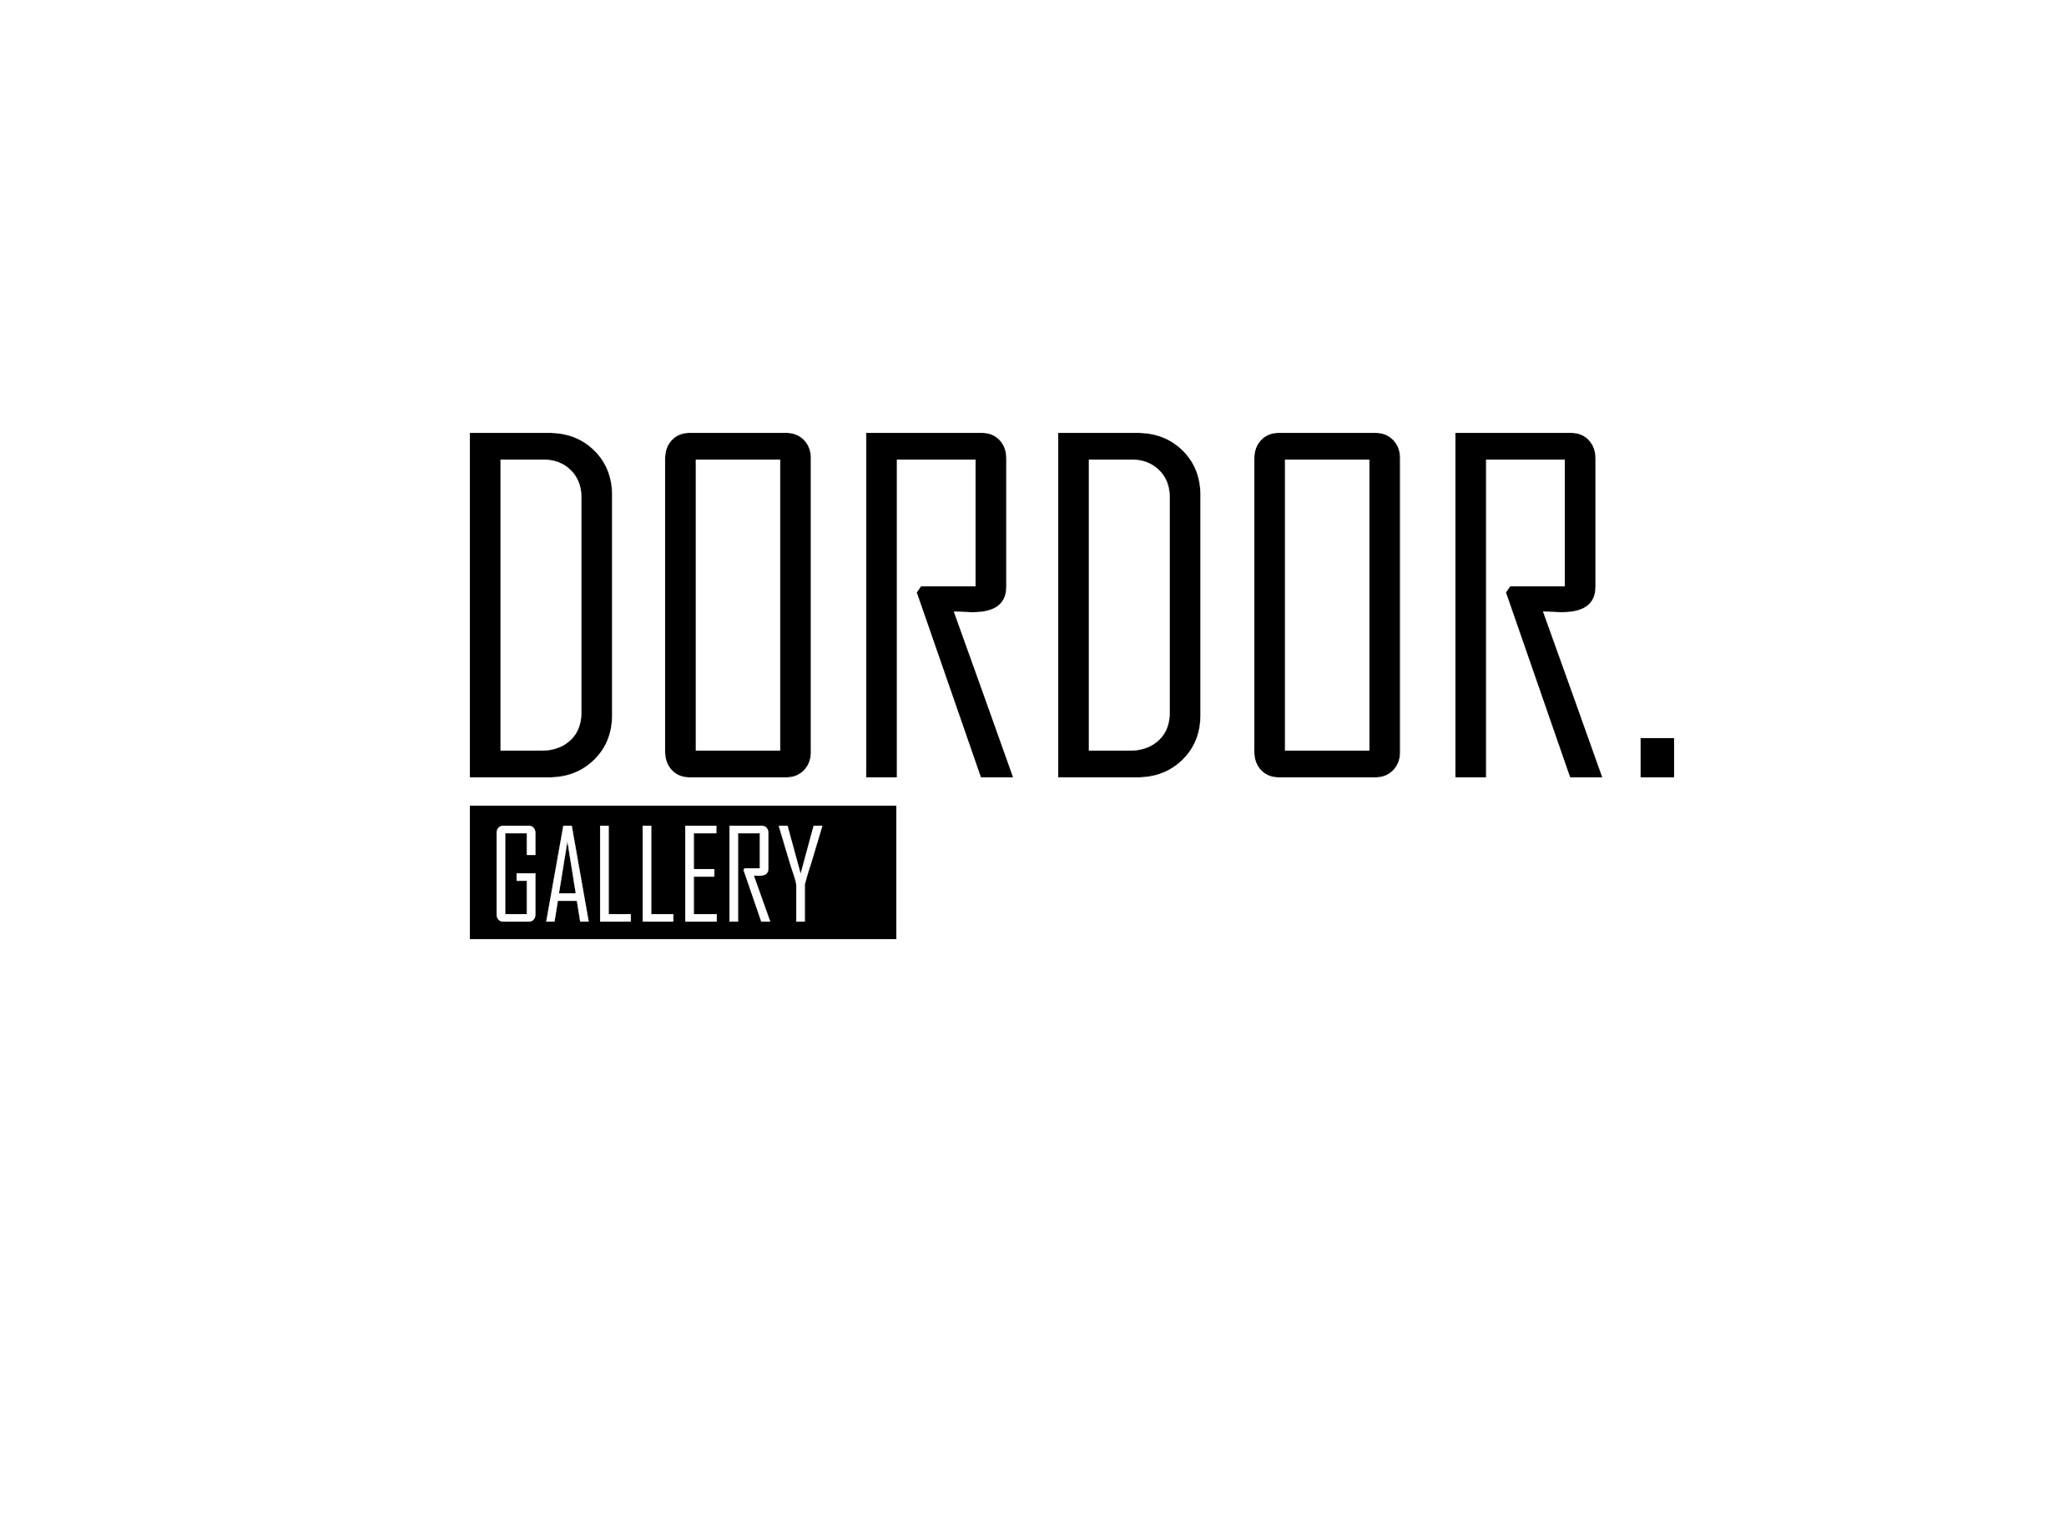 Dordor Gallery